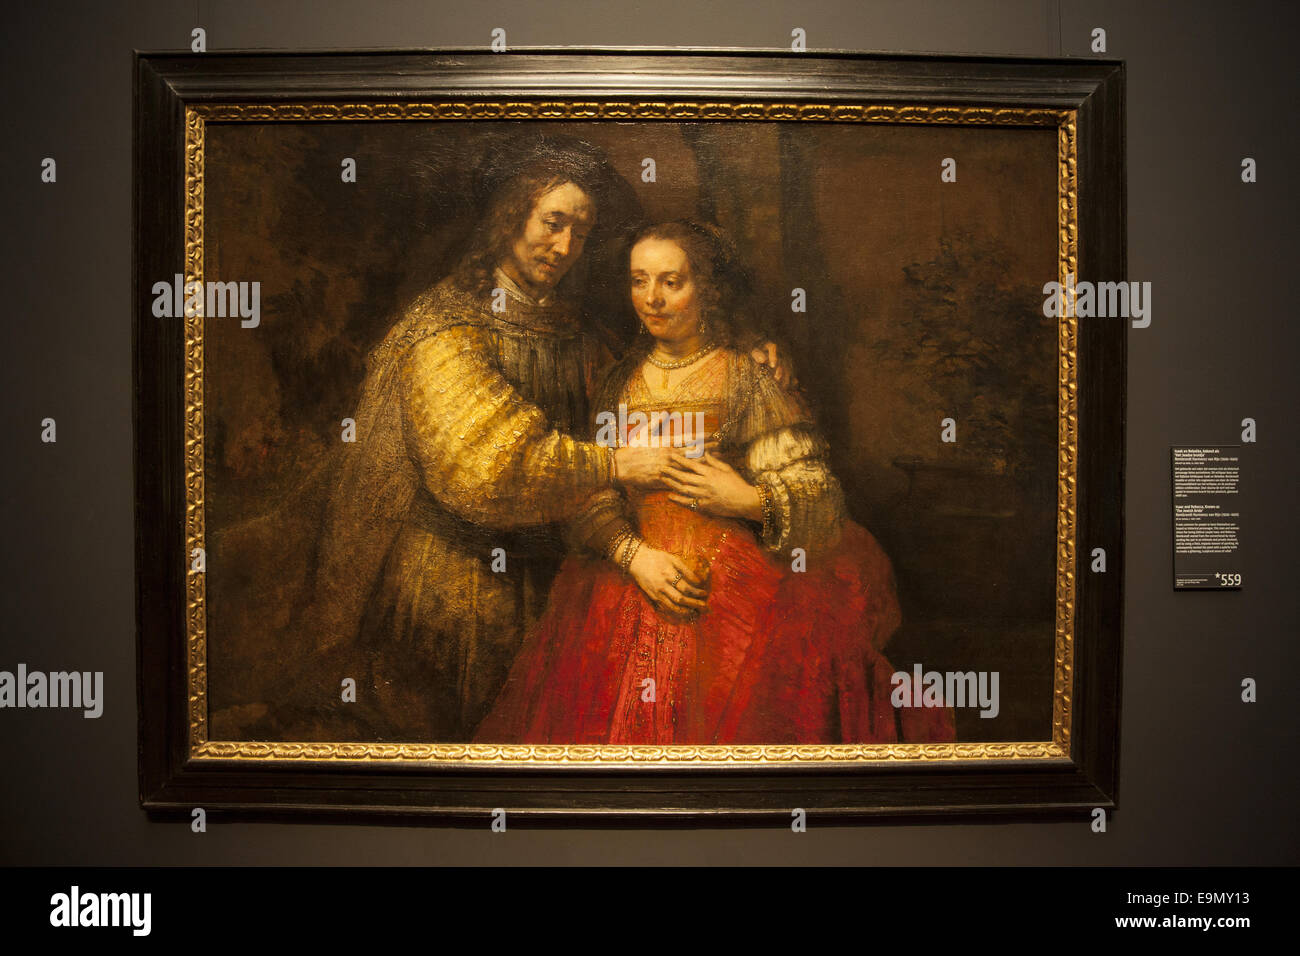 Isaac y Rebecca, conocida como "La novia judía", Rembrandt, óleo sobre lienzo, 1665-1669. El Rijksmuseum, el Museo Nacional de la red Foto de stock